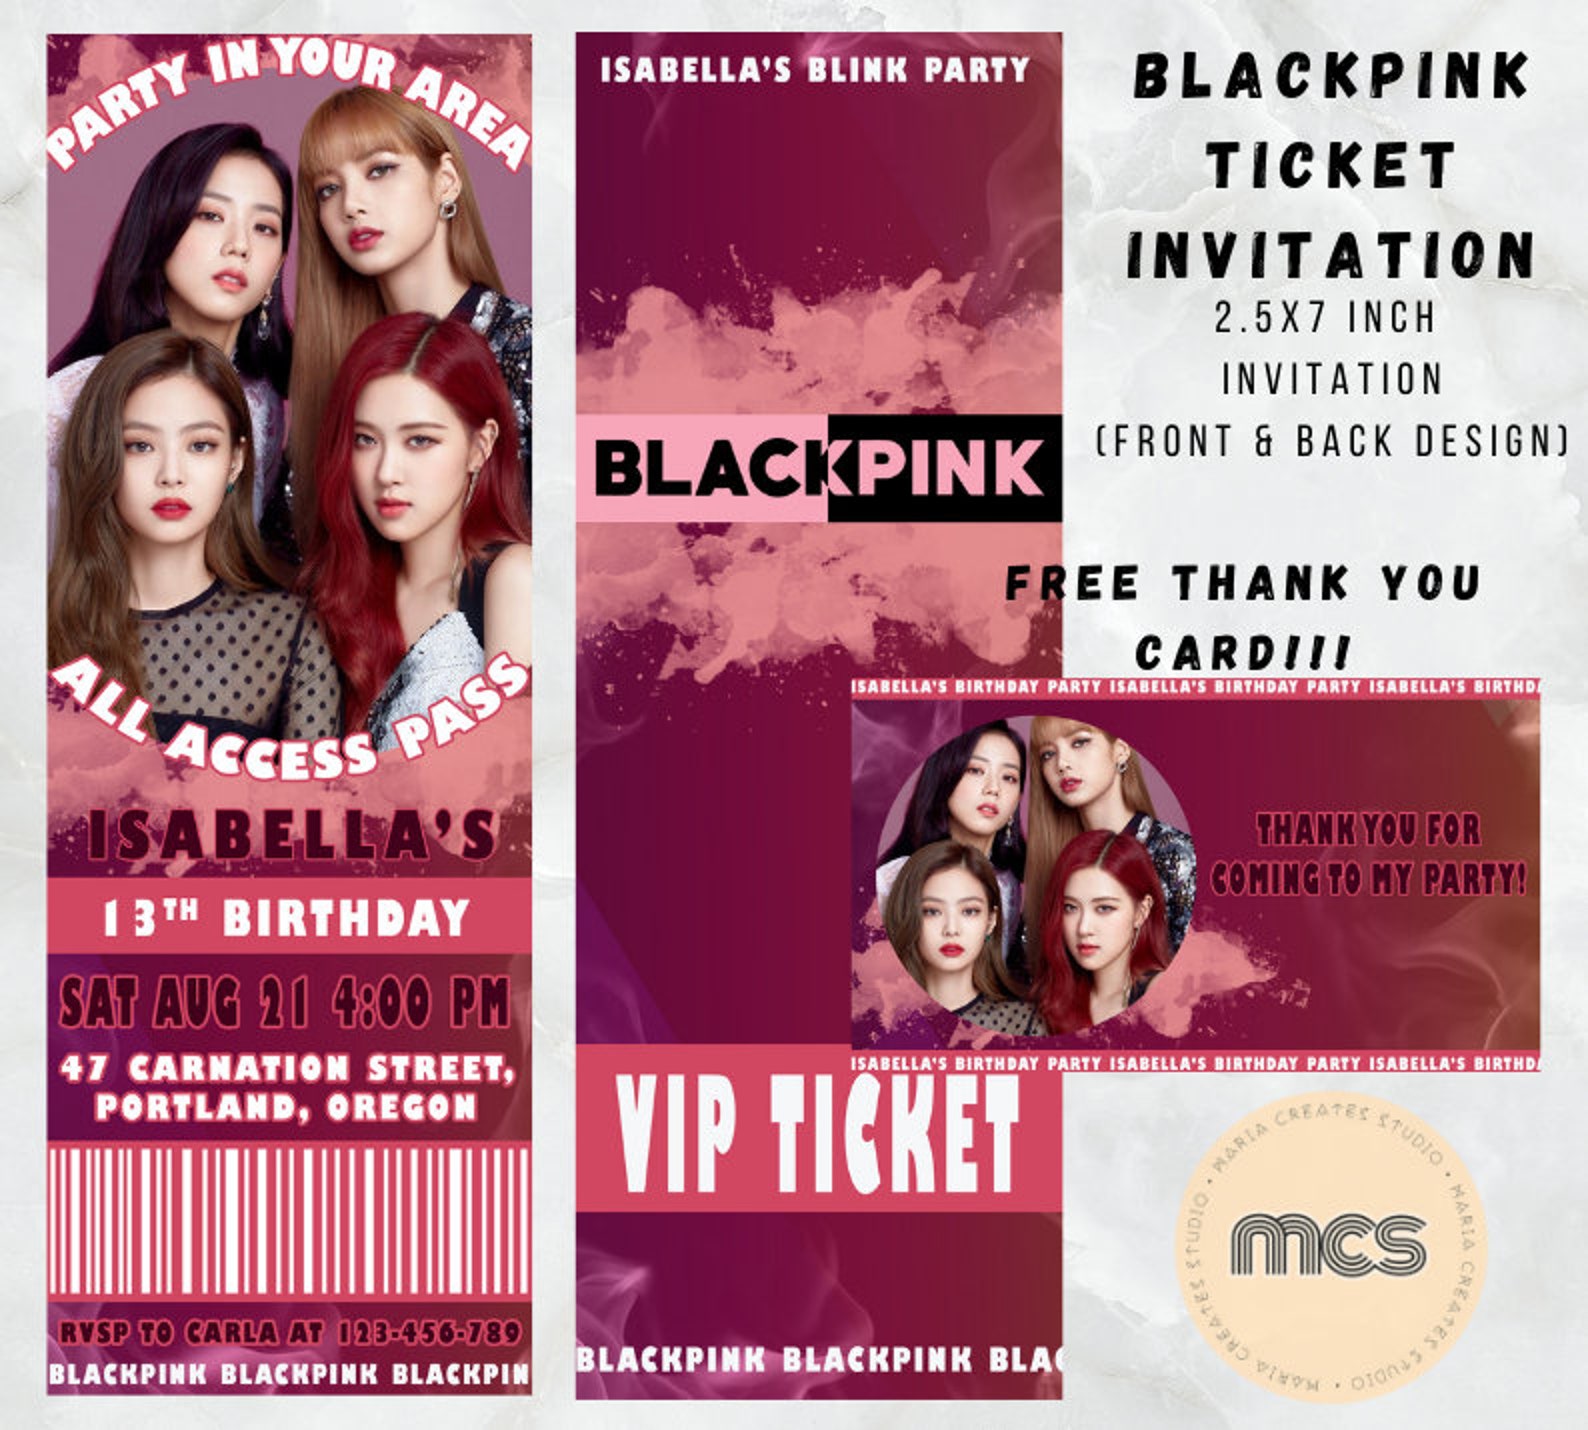 blackpink-birthday-ticket-invitation-blink-birthday-etsy